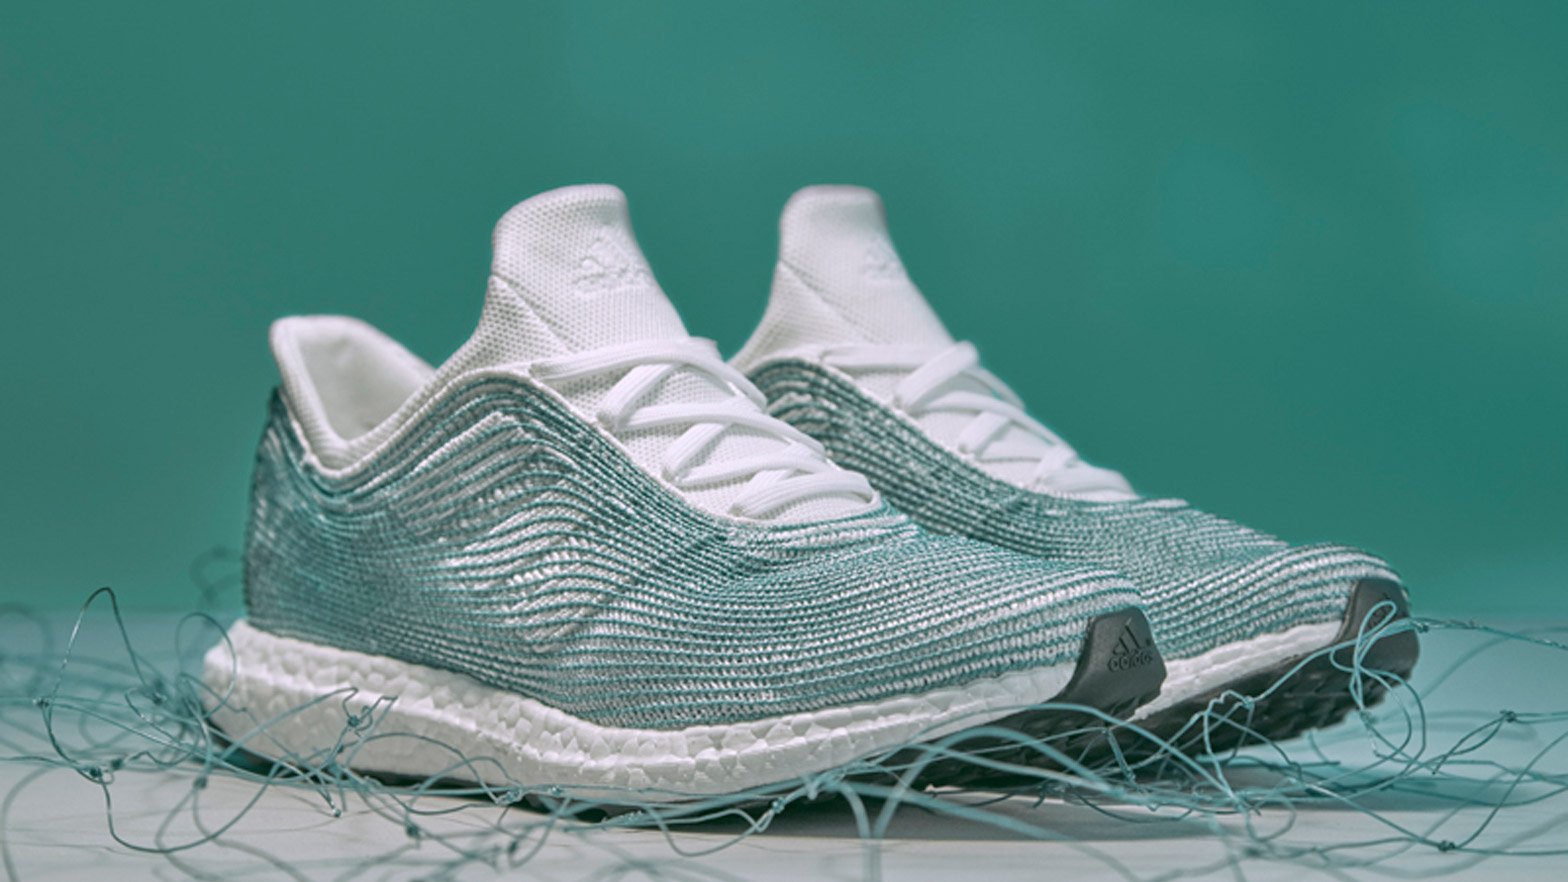 Decepcionado compromiso Autorización Adidas x Parley shoes made from recycled ocean plastic launch